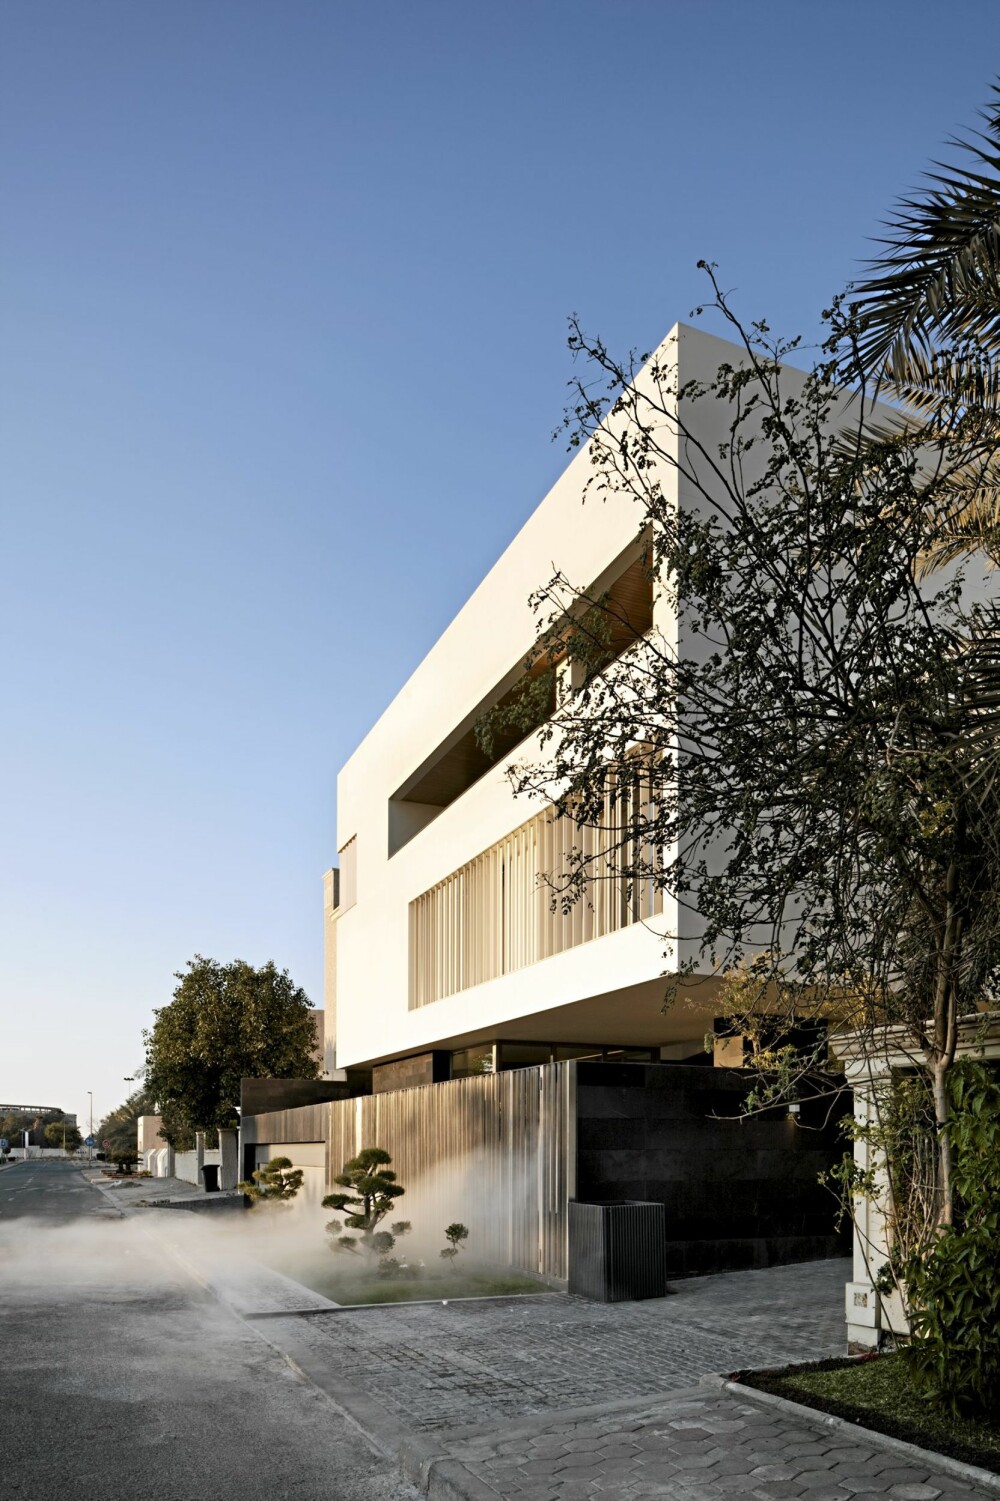 HEMMELIG HUS: Huset har fått navnet Secret House, ligger i Kuwait by og er tegnet av AGI architects